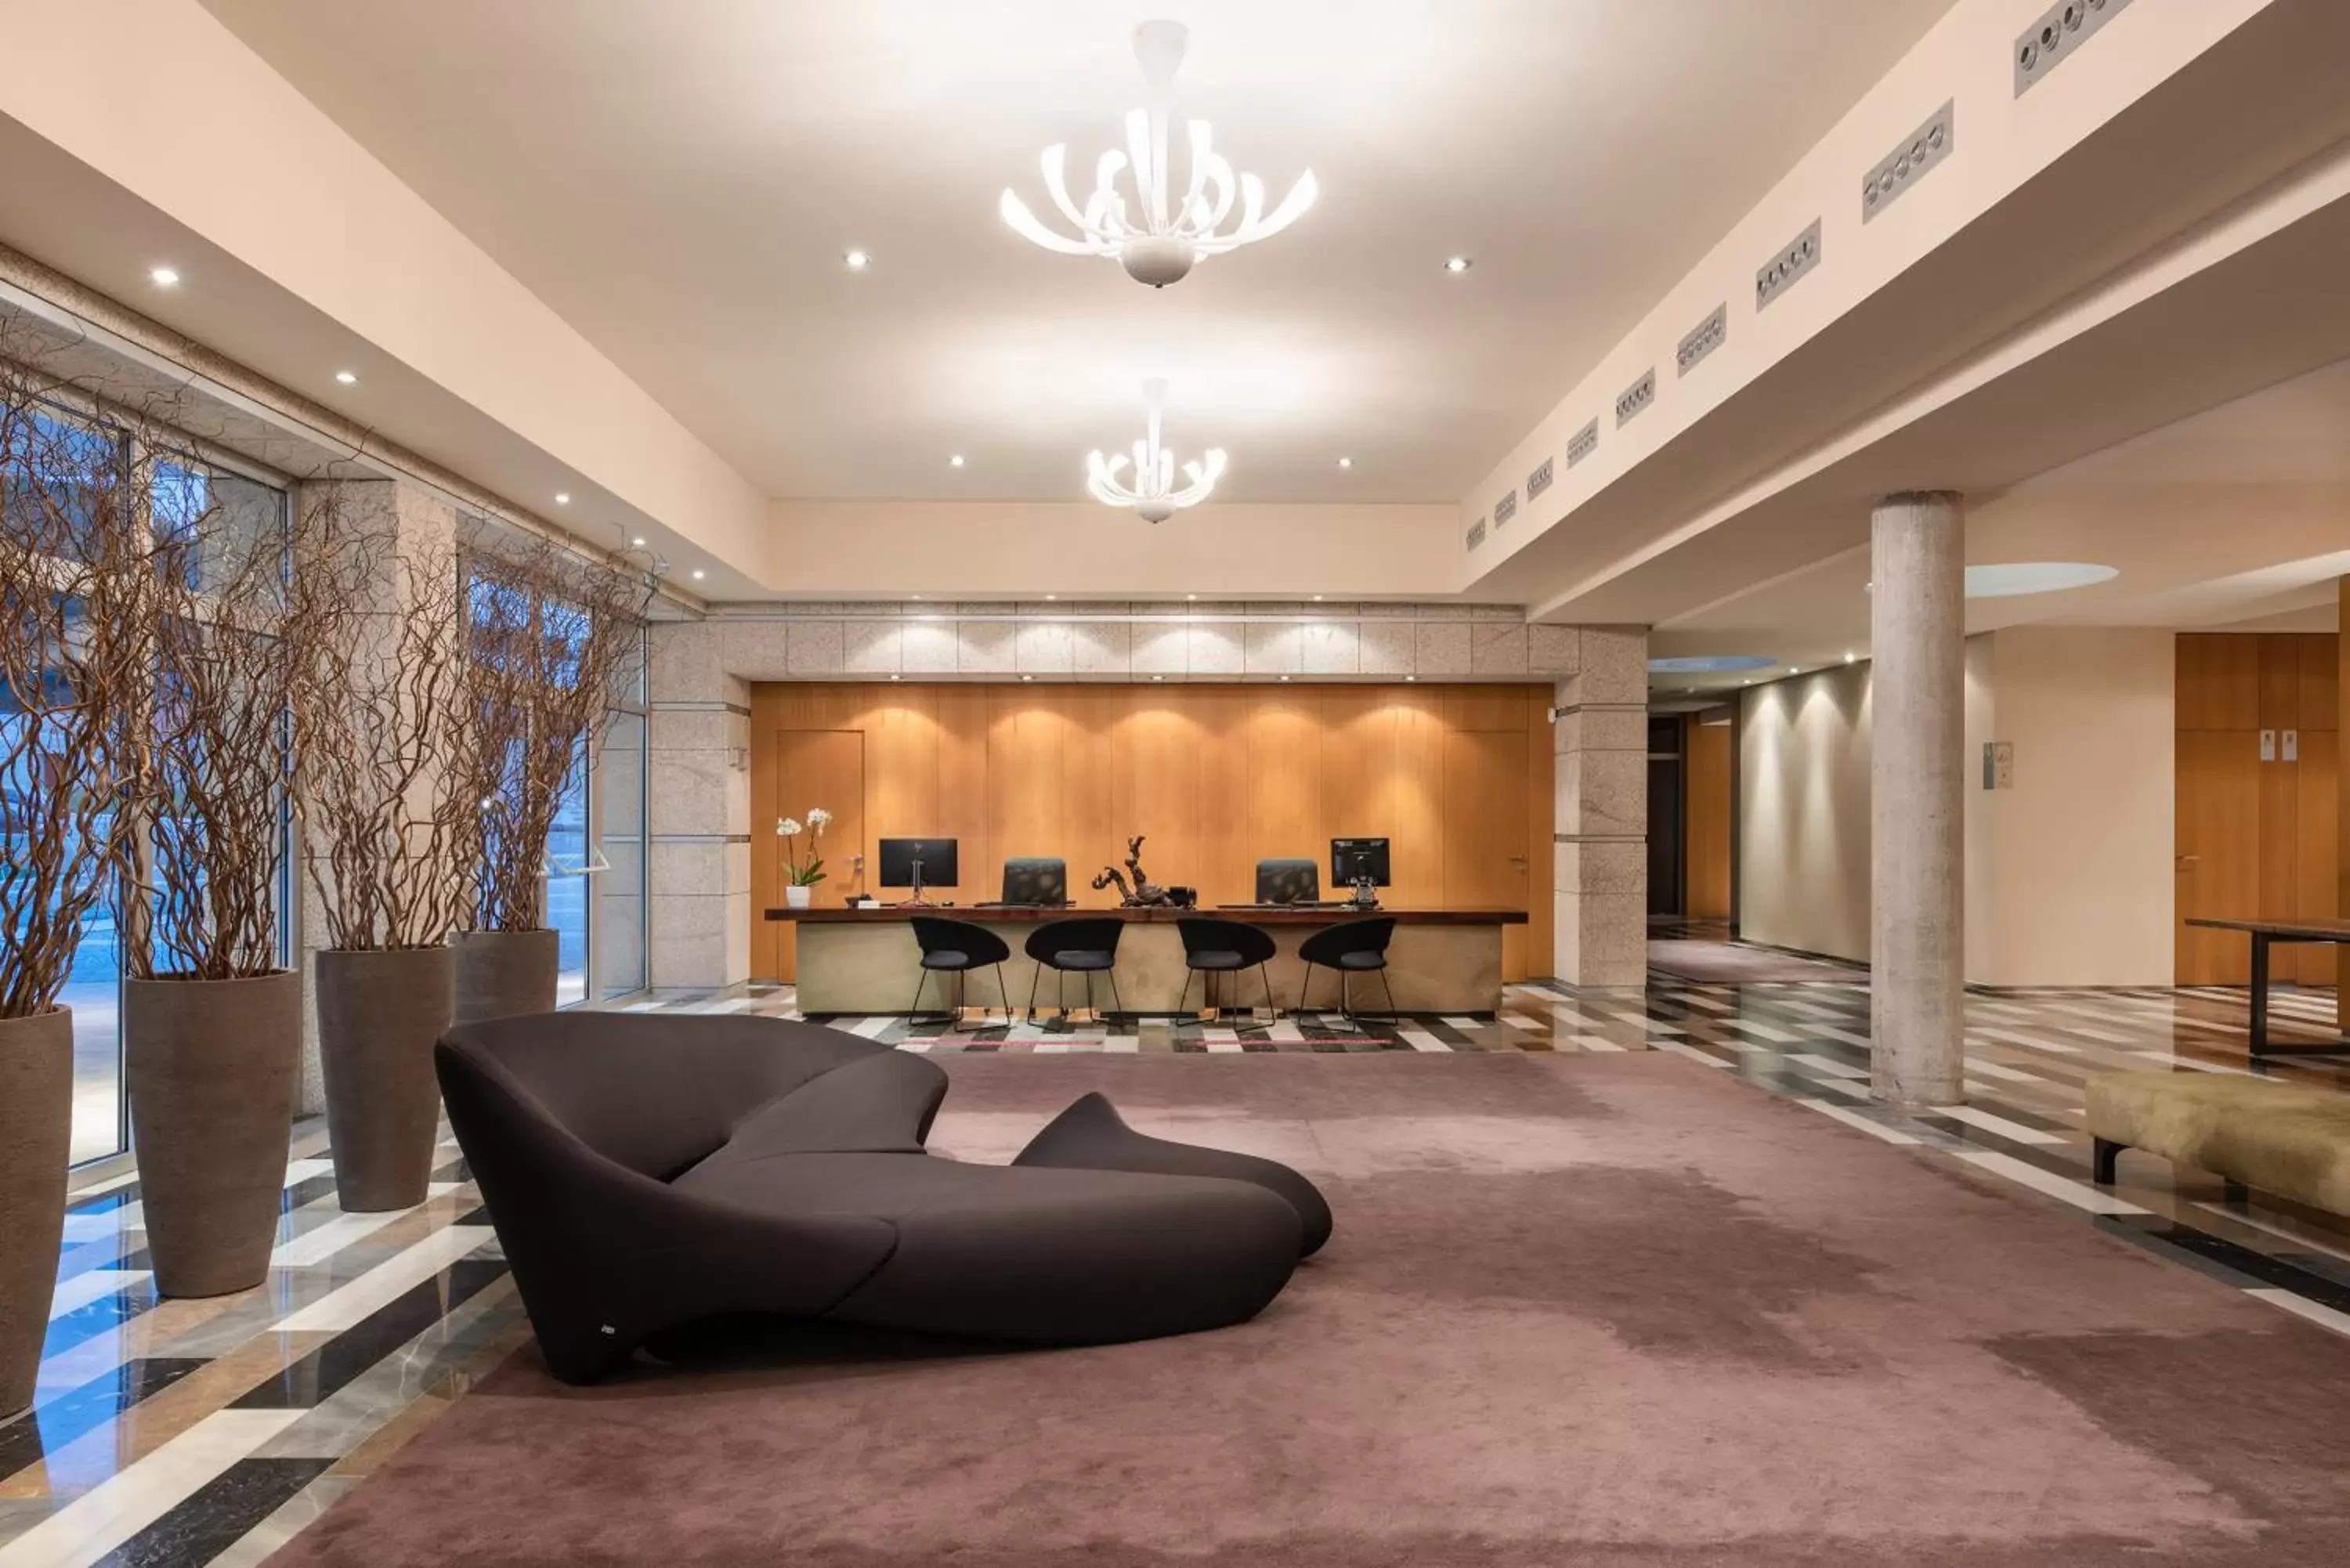 Lobby or reception in Valbusenda Hotel Bodega & Spa